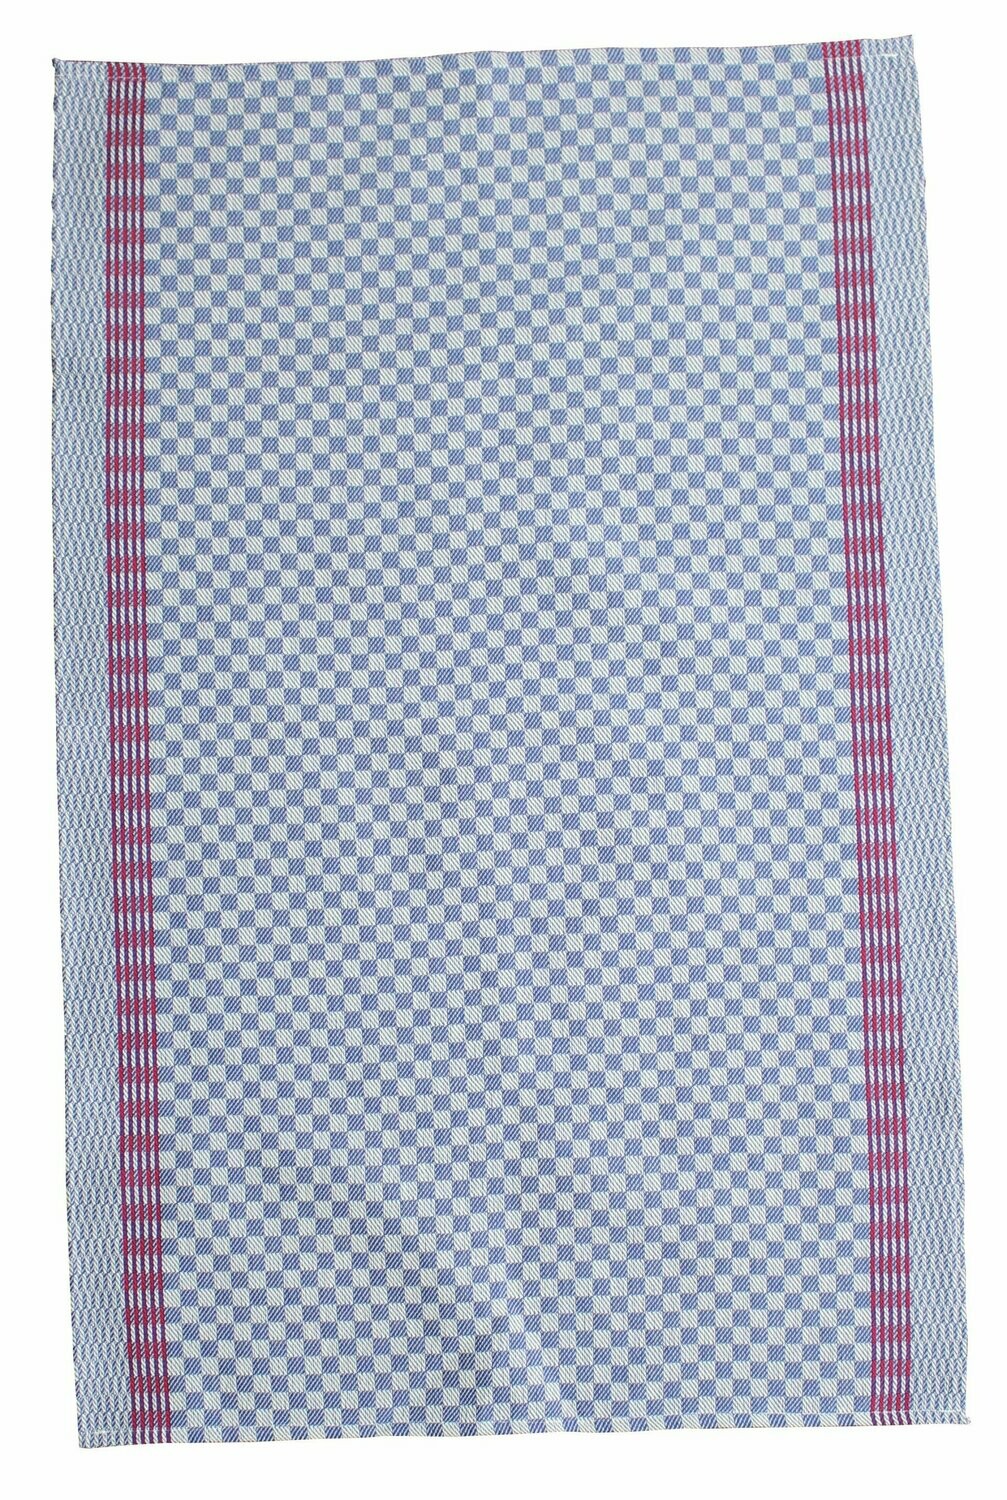 Gruben - und Arbeits - Handtuch, blau kariert, ca. 50 x 75 cm